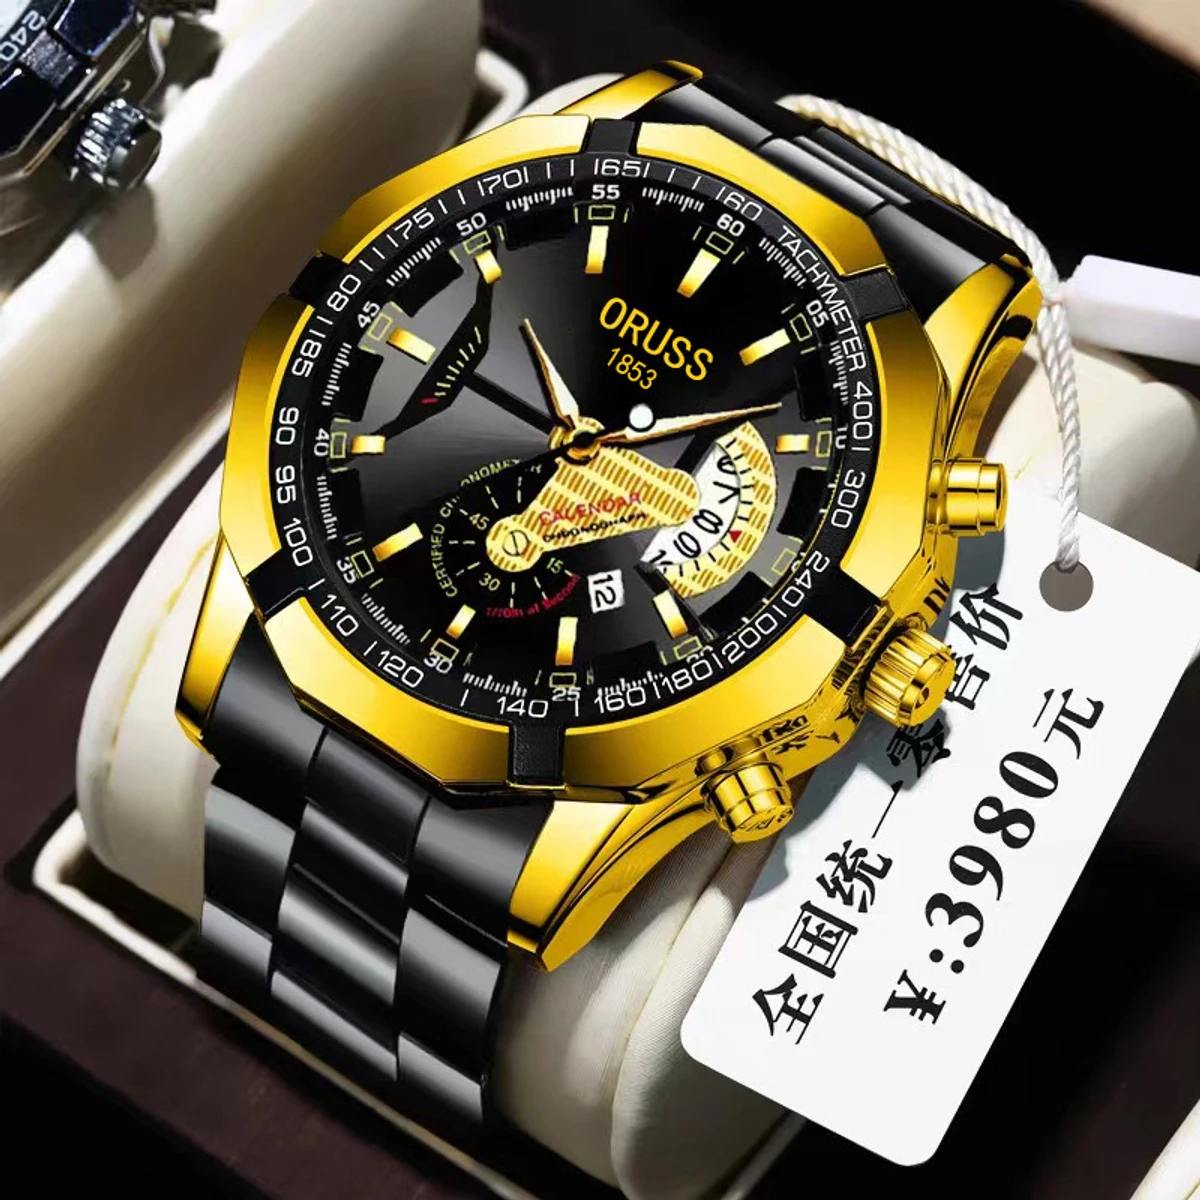 Oruss Luxury Men Watches Business Top Brand Man Wristwatch Waterproof Luminous Date Quartz Men's Watch High Quality- Black & Golden